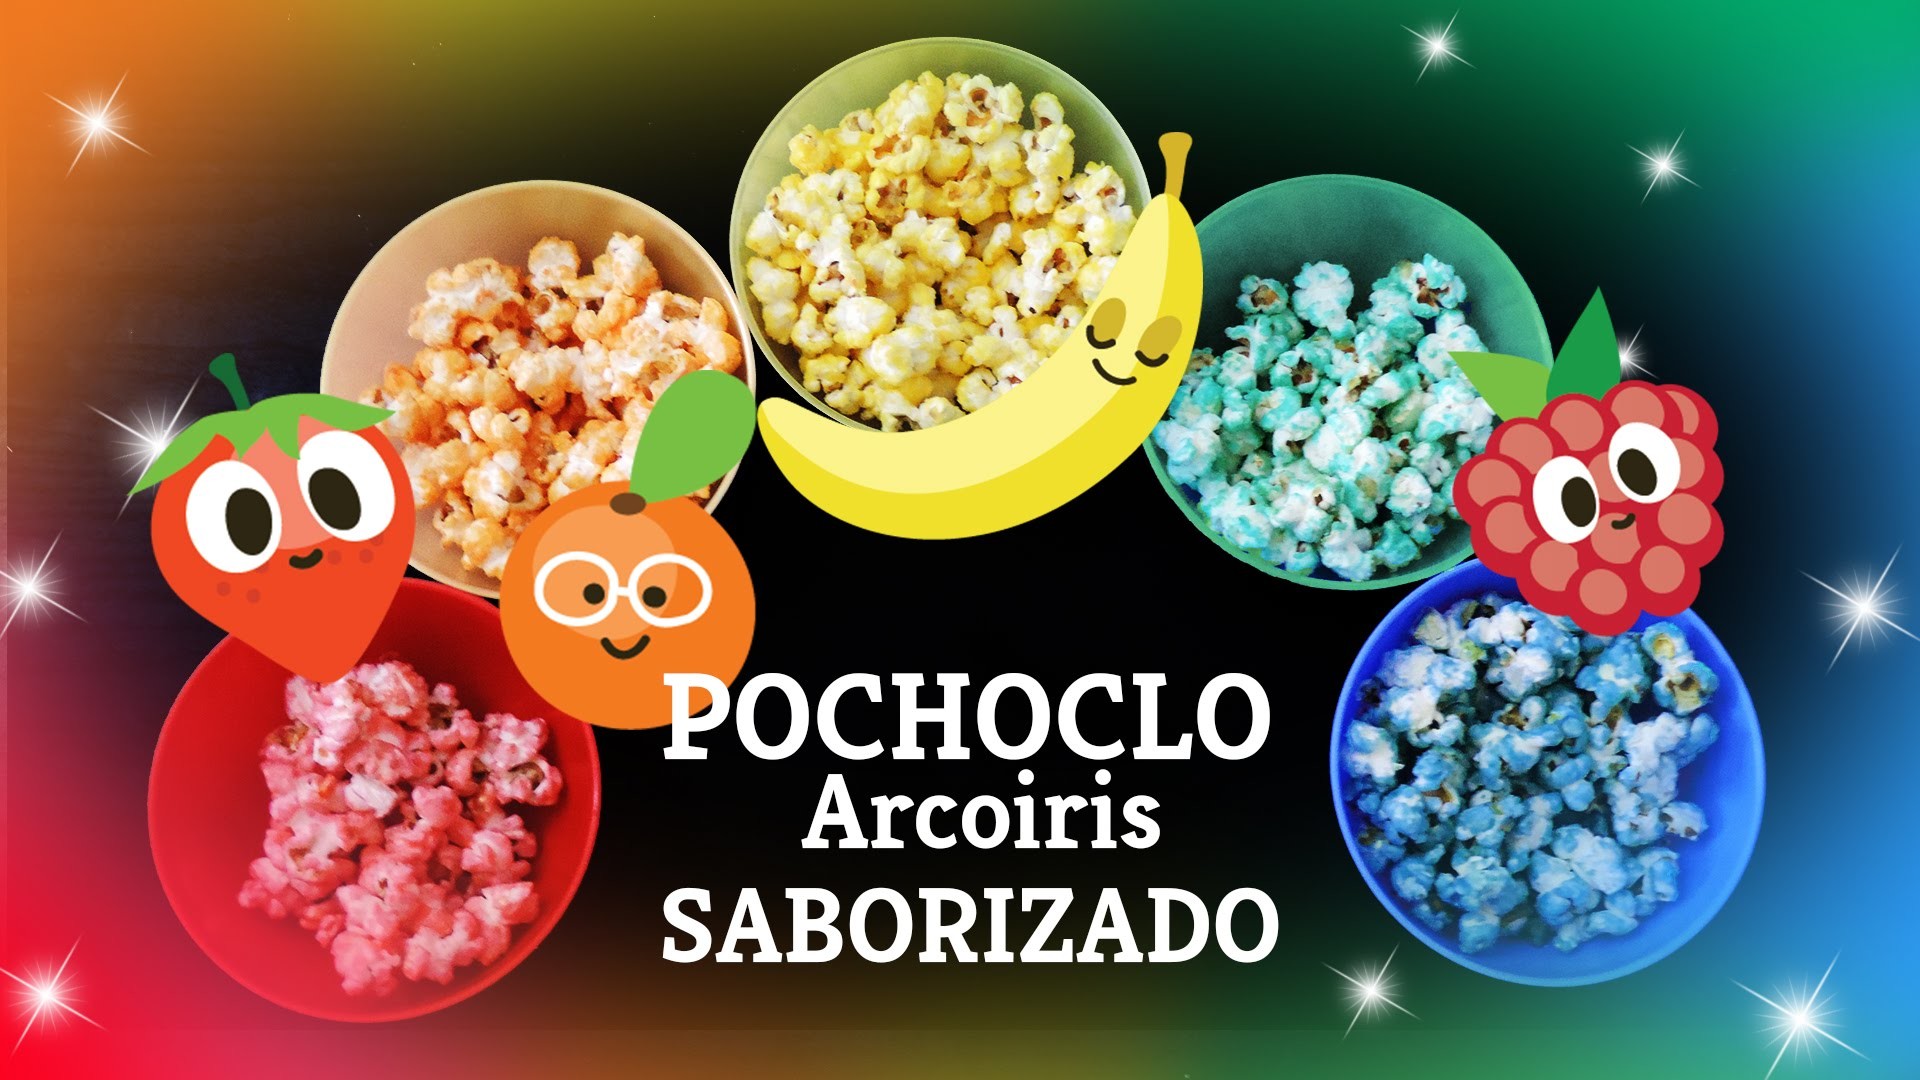 Pochoclos Arcoiris Saborizados frutales. Rainbow fruit flavored popcorn